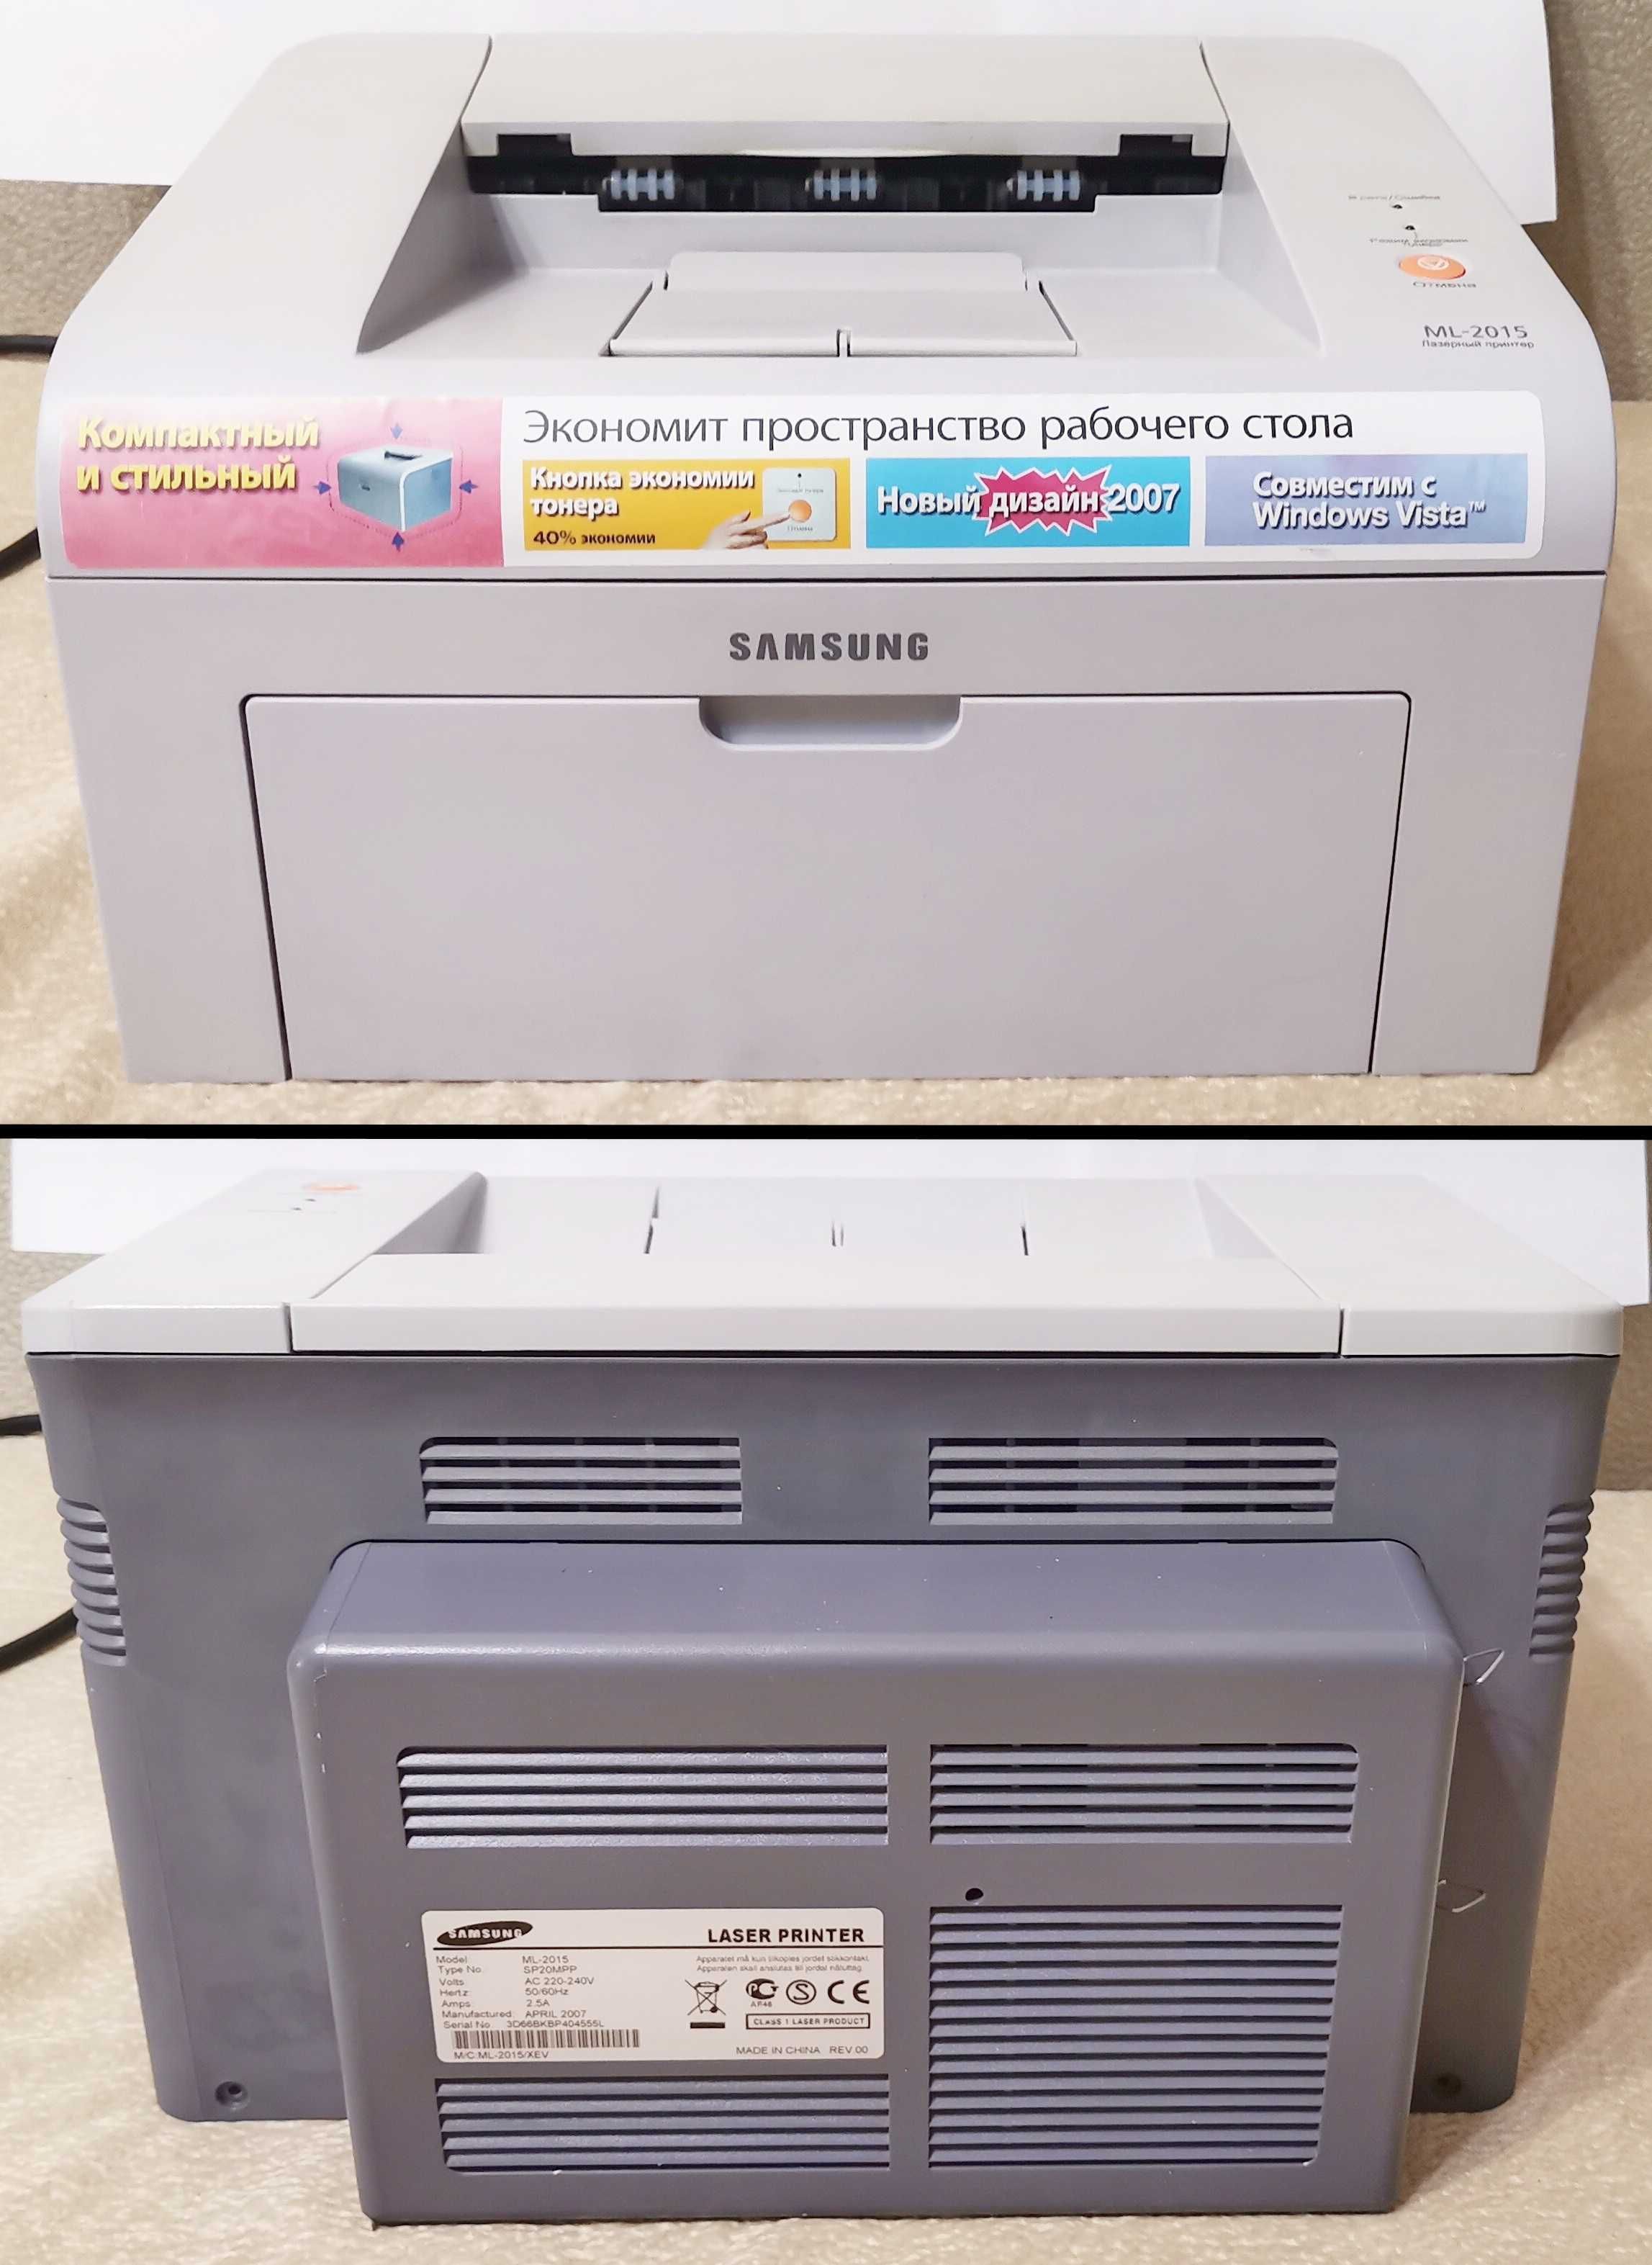 Надійний та економічний принтер Samsung ML-2015 із повним картриджем